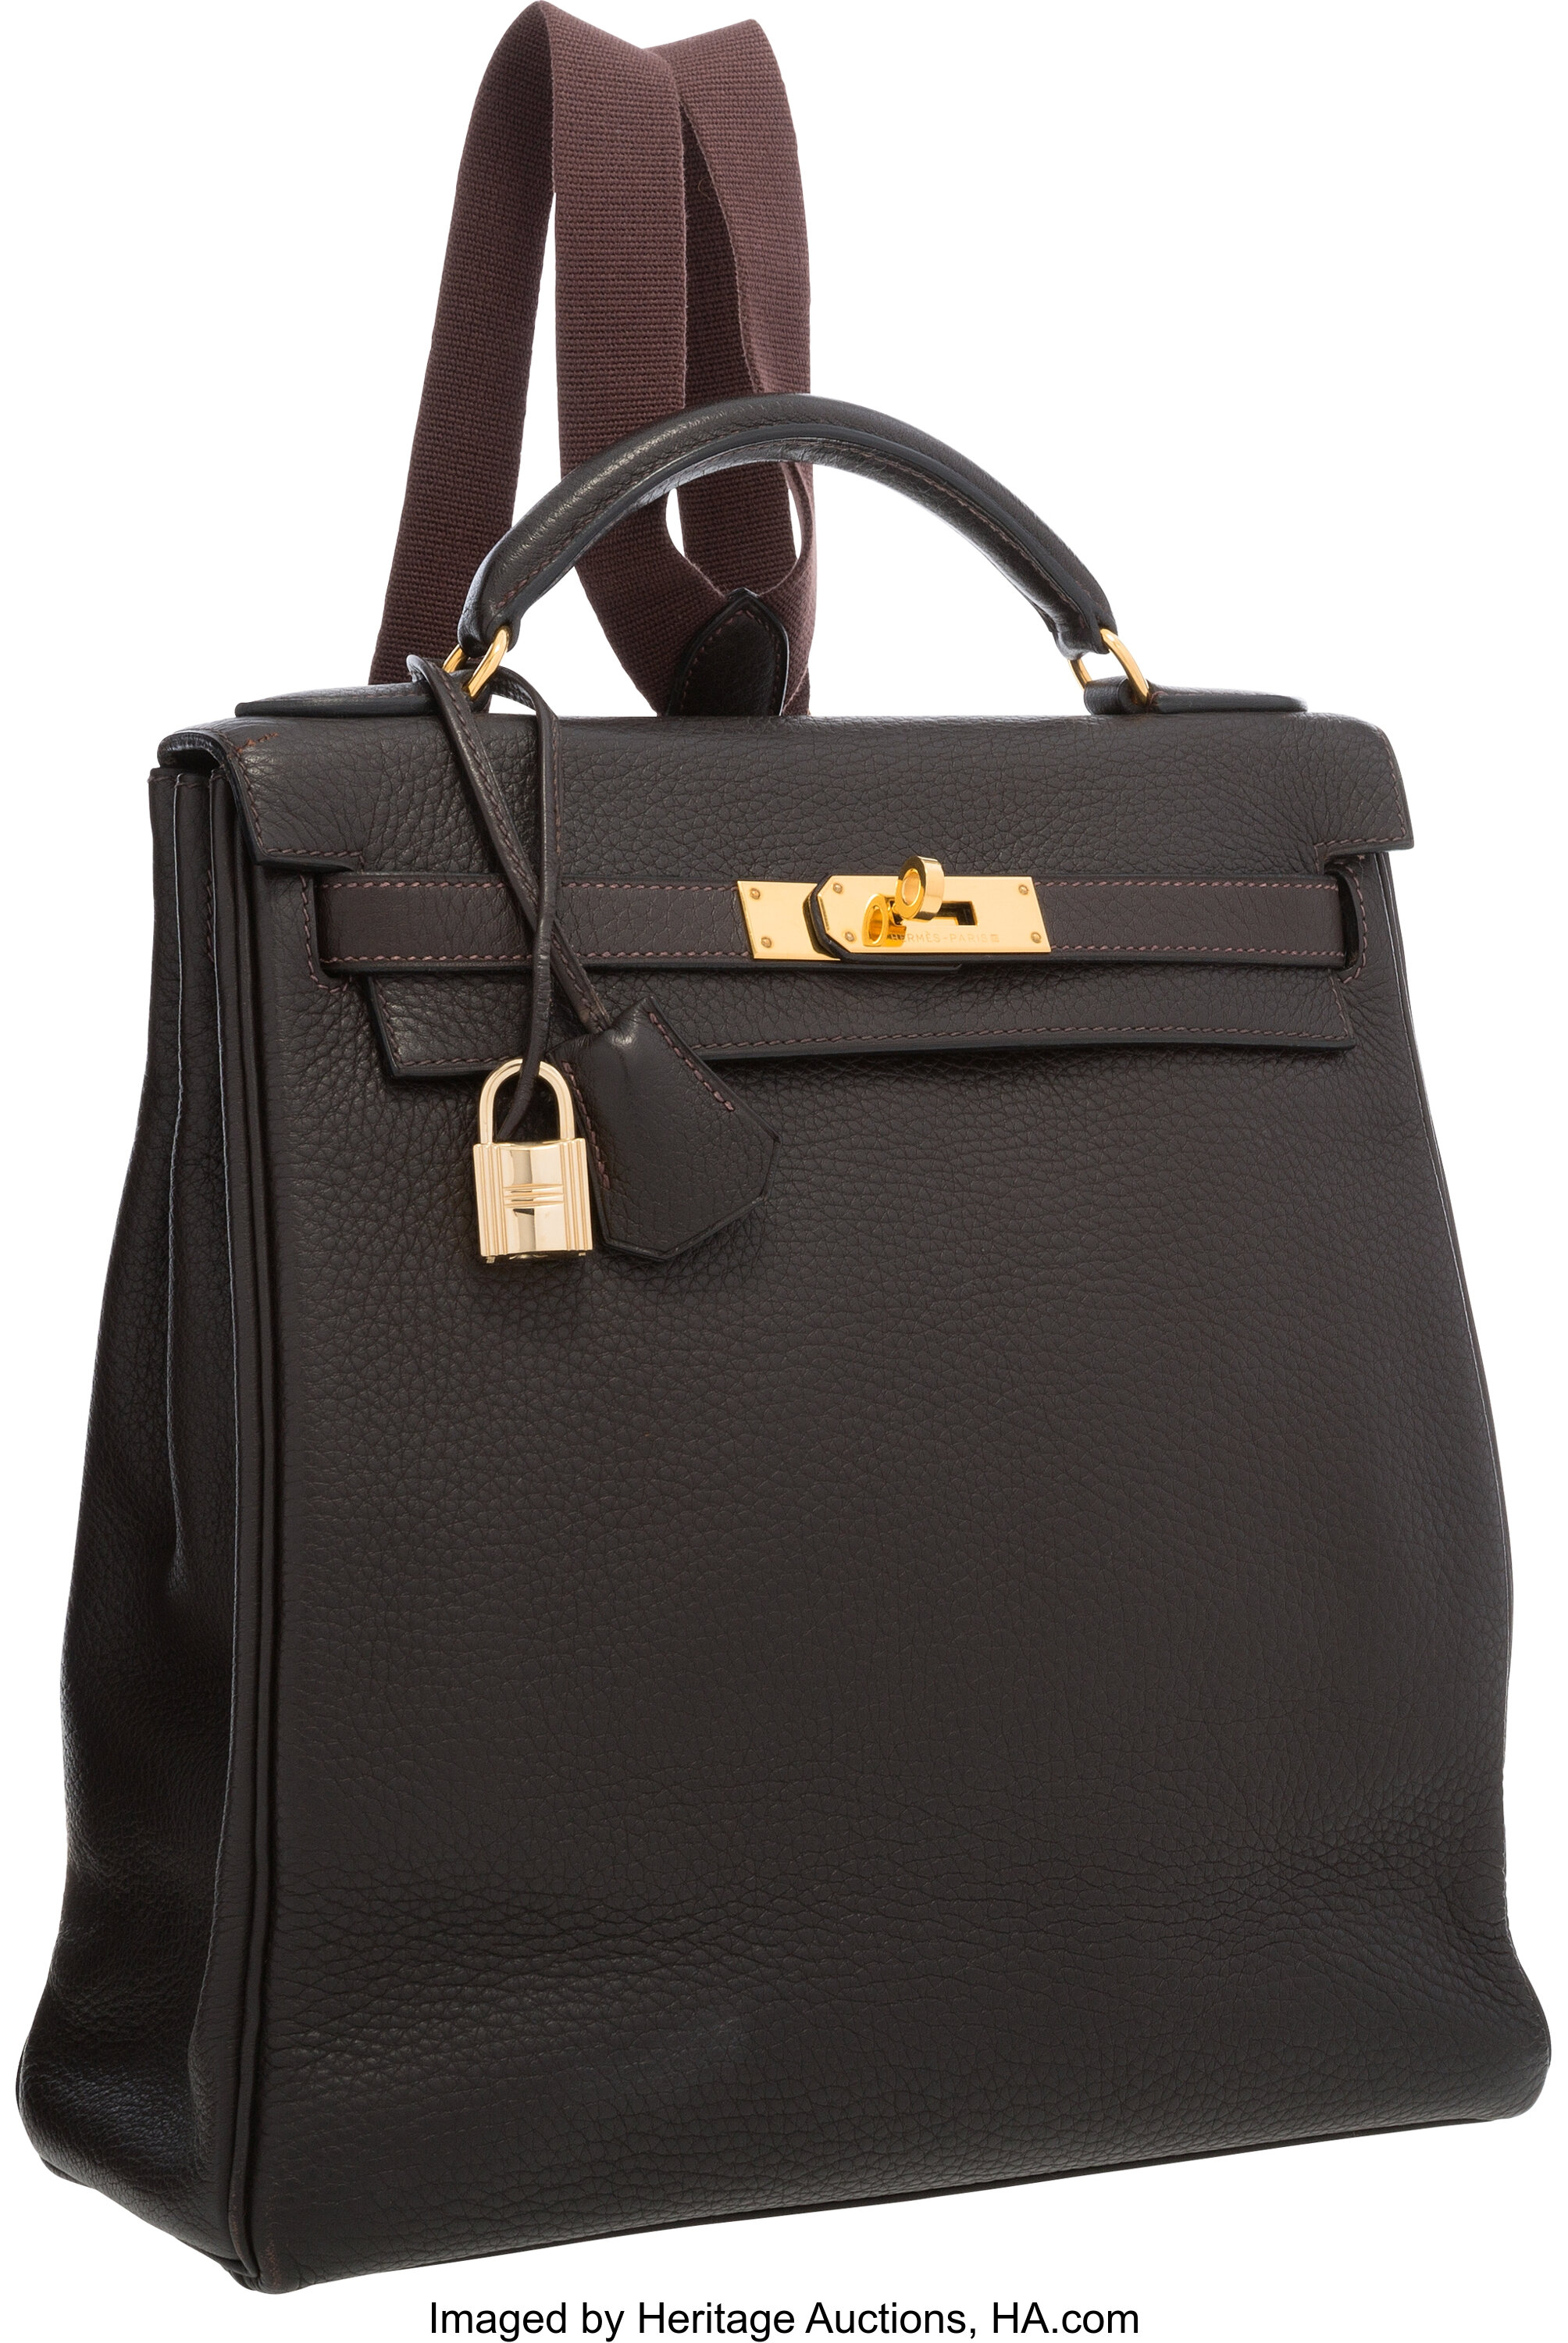 HERMÈS Kelly Backpack Bags & Handbags for Women